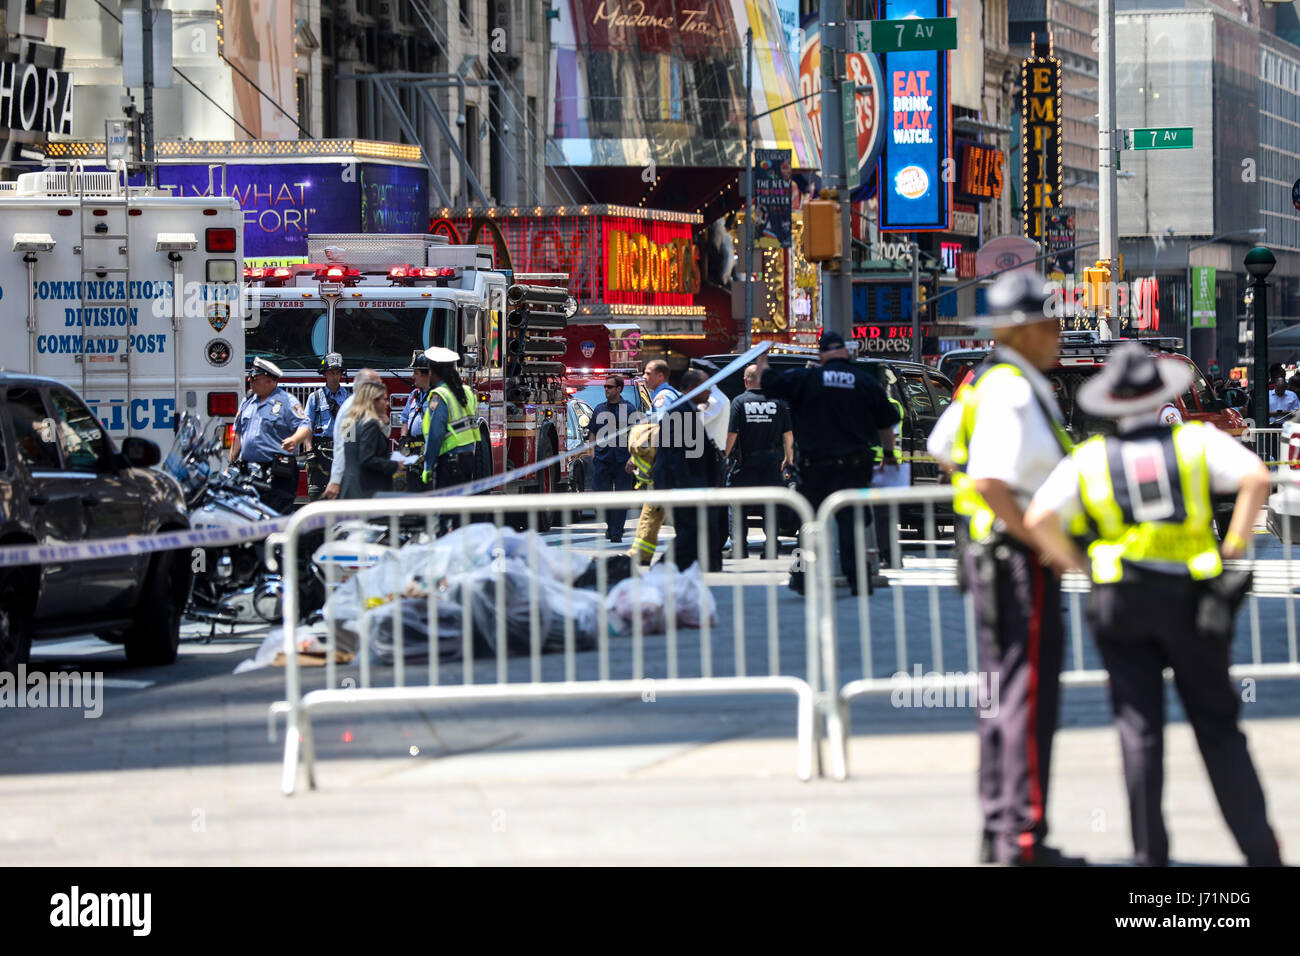 NEW YORK,NY, 18.05.2017 - ATROPELAMENTO-NEW YORK - Um carro em alta velocidade perdeu controle na Times Square e atropelou 14 pessoas, deixando um morto e 13 feridos que foram encaminhadas a hospital da regi„o. Policia de New York ainda n„o tem a informaÁ„o sobre ligaÁ„o com terrorismo. (Foto: William Volcov/Brazil Photo Press) Stock Photo